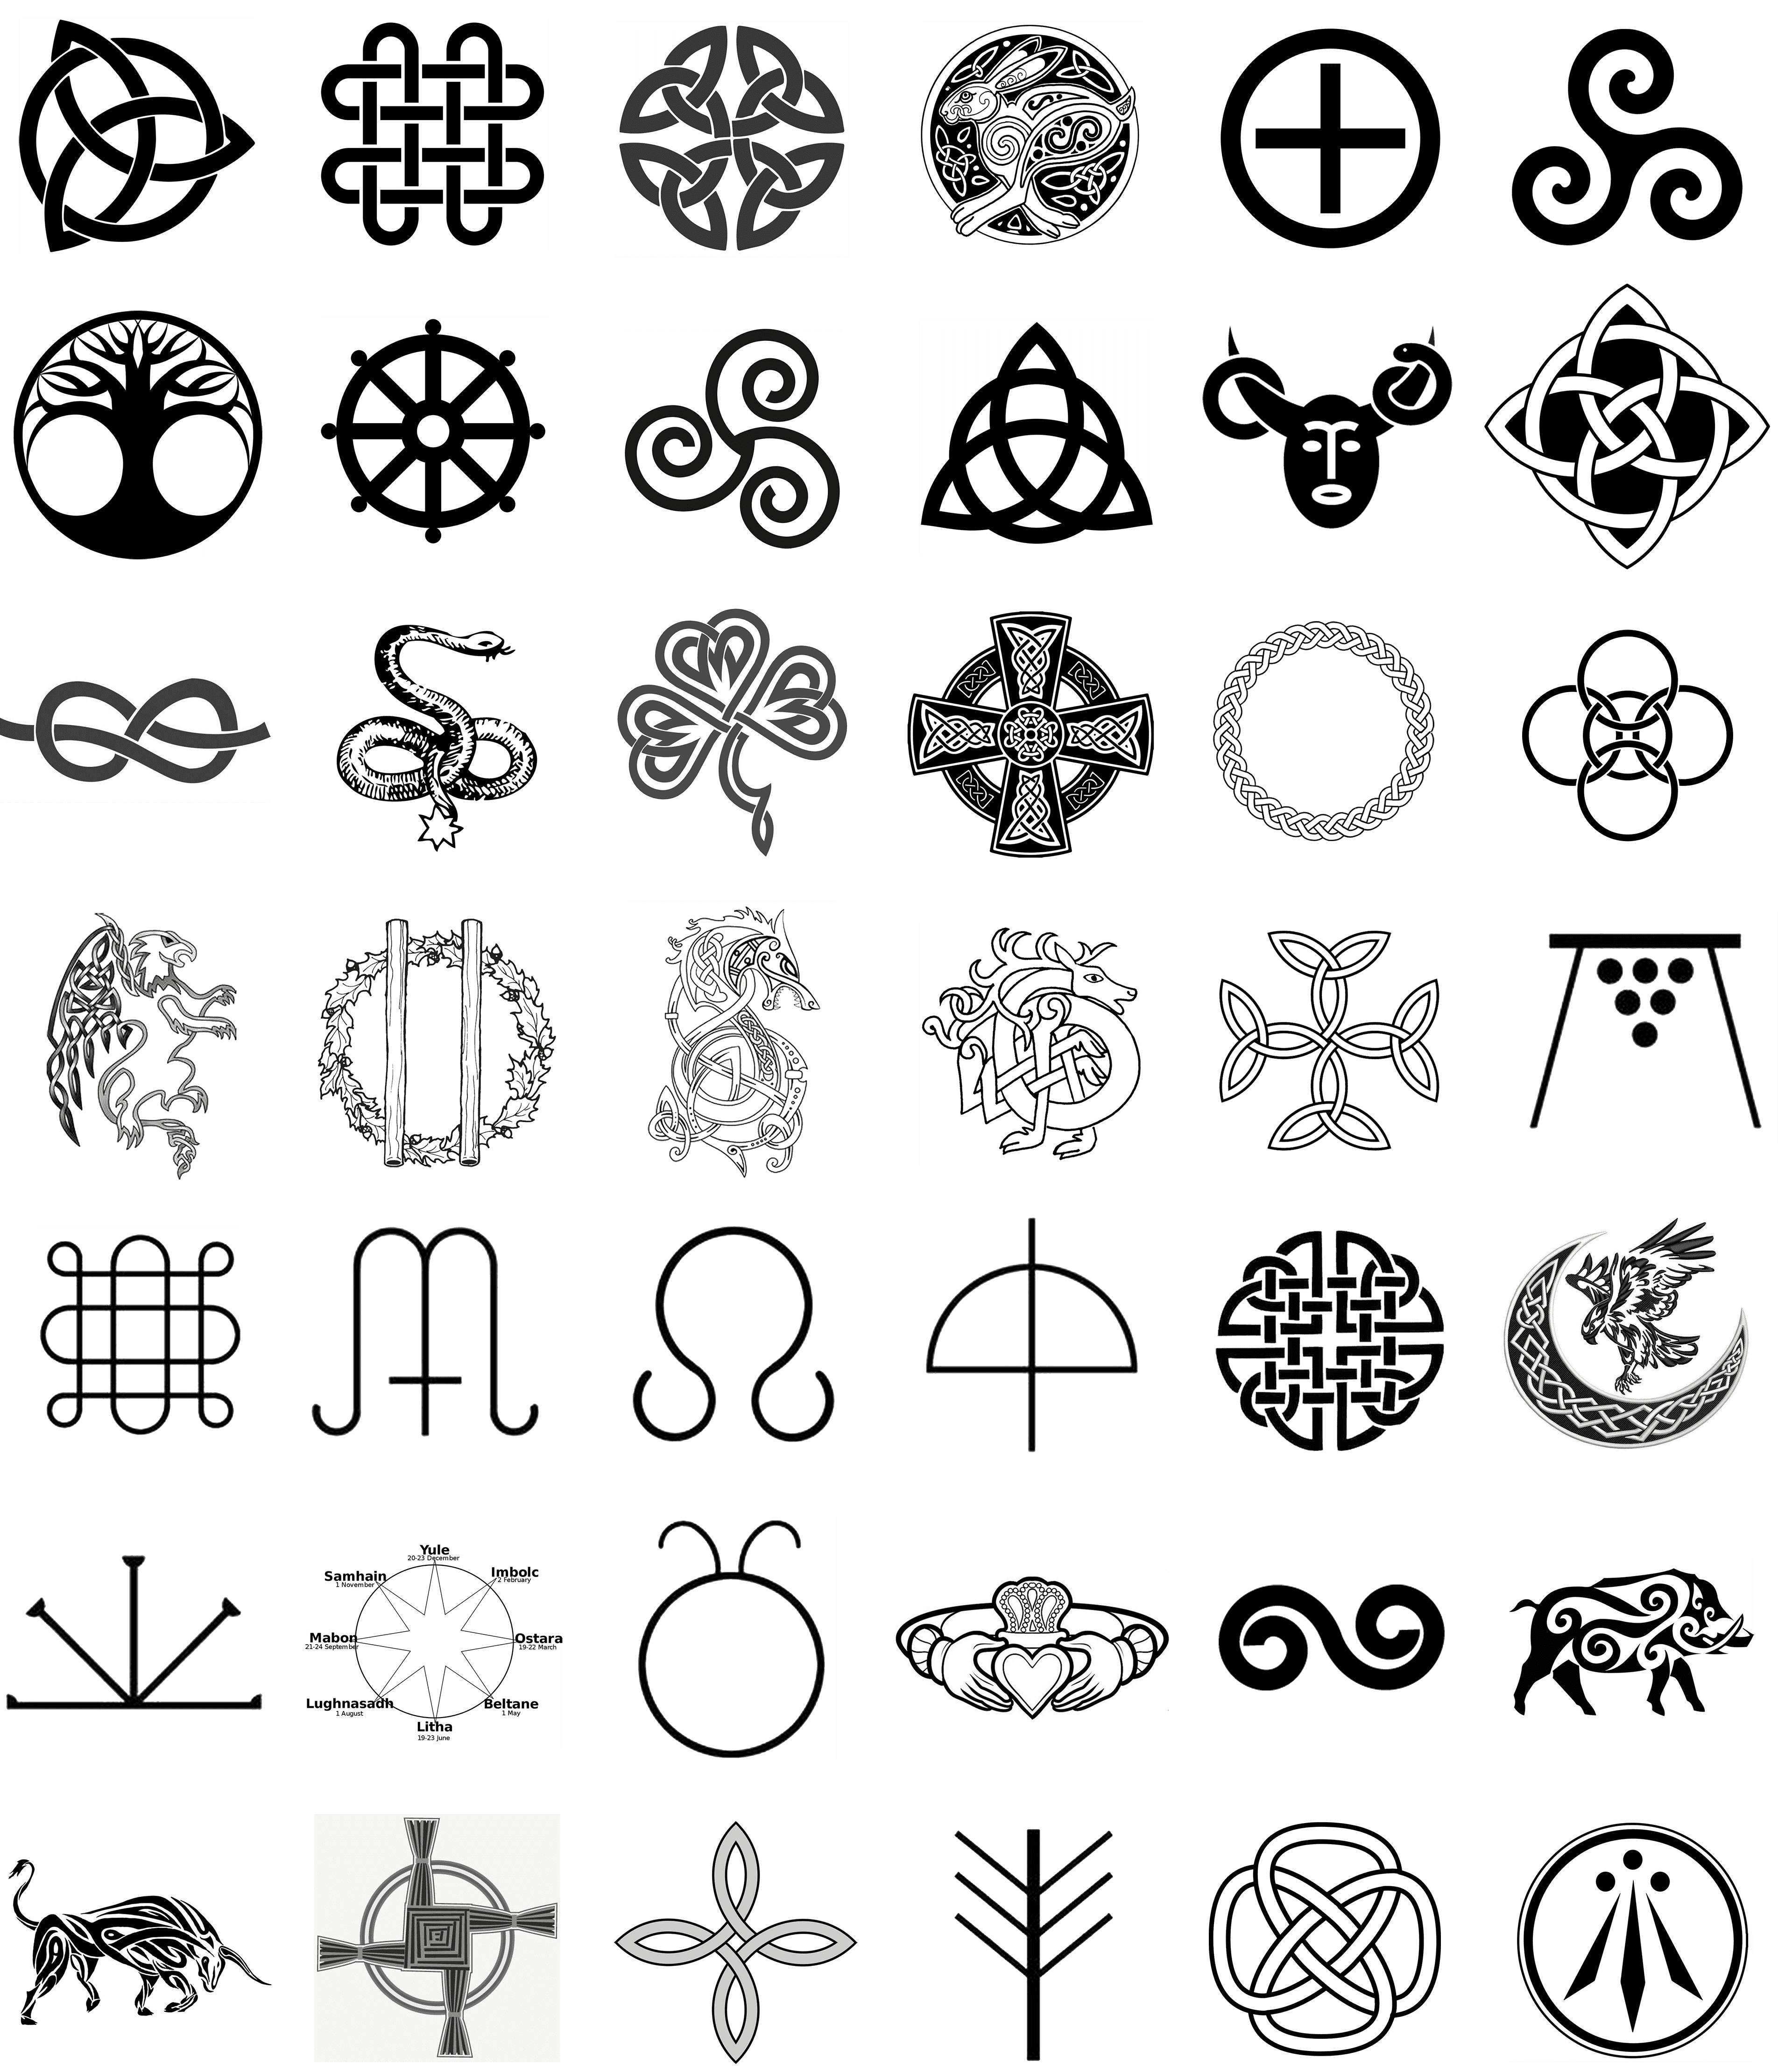 Tattoos of irish symbols